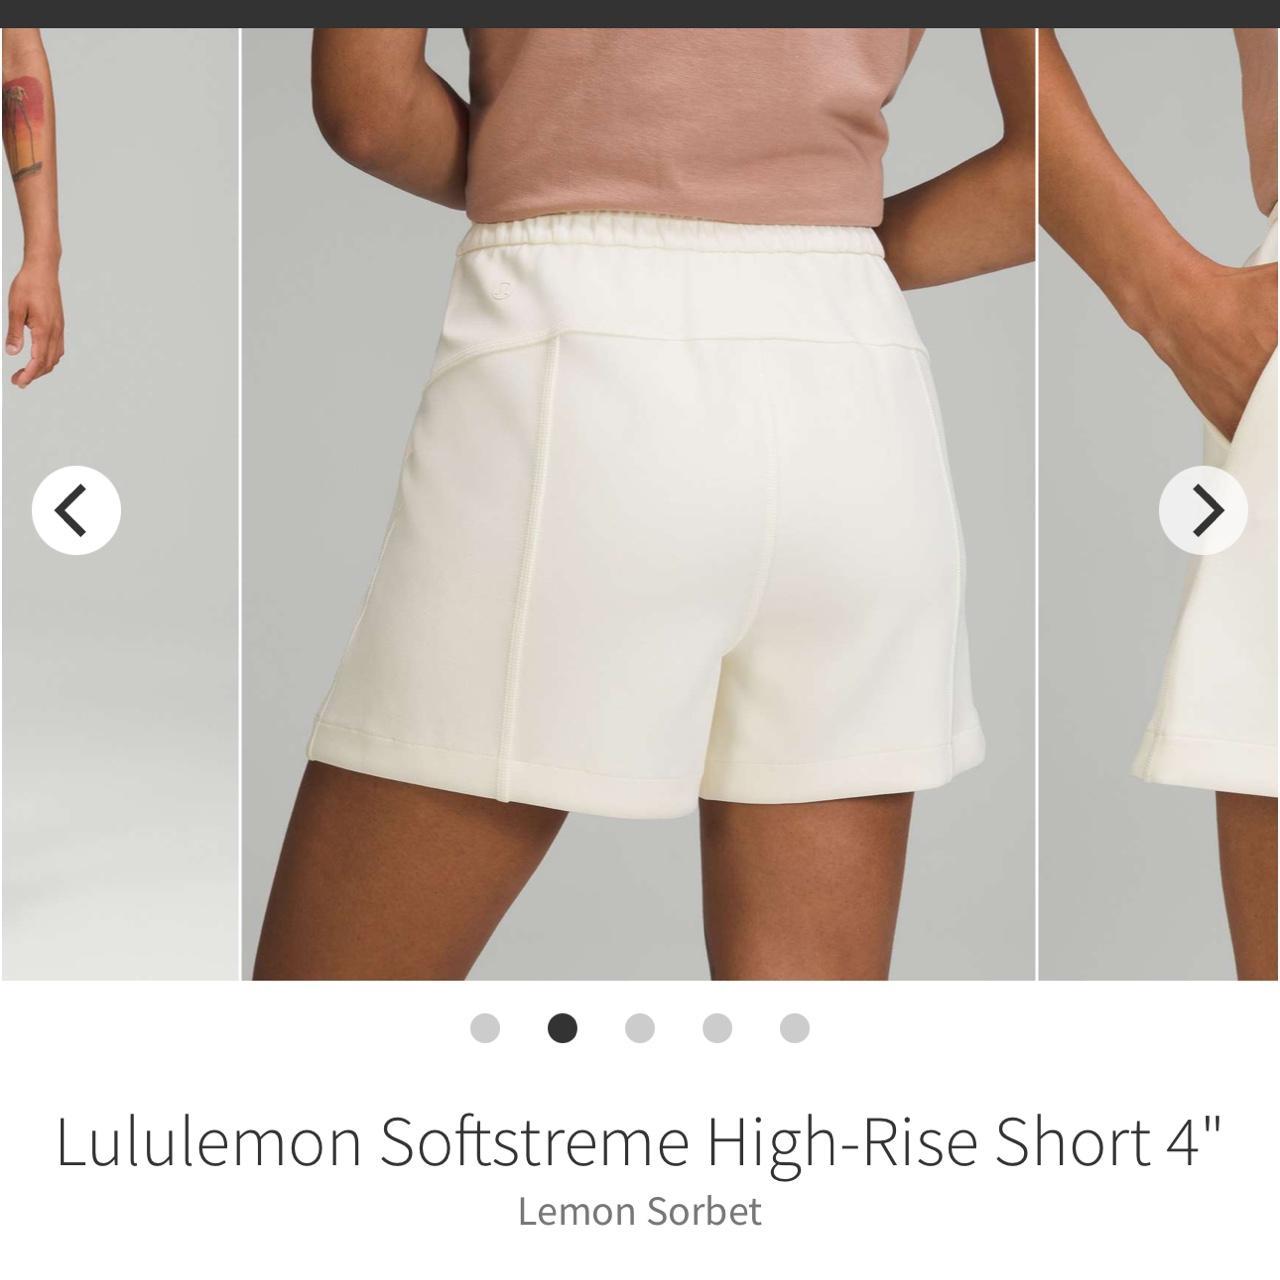 Lululemon softstreme high-rise short 4” in White - Depop